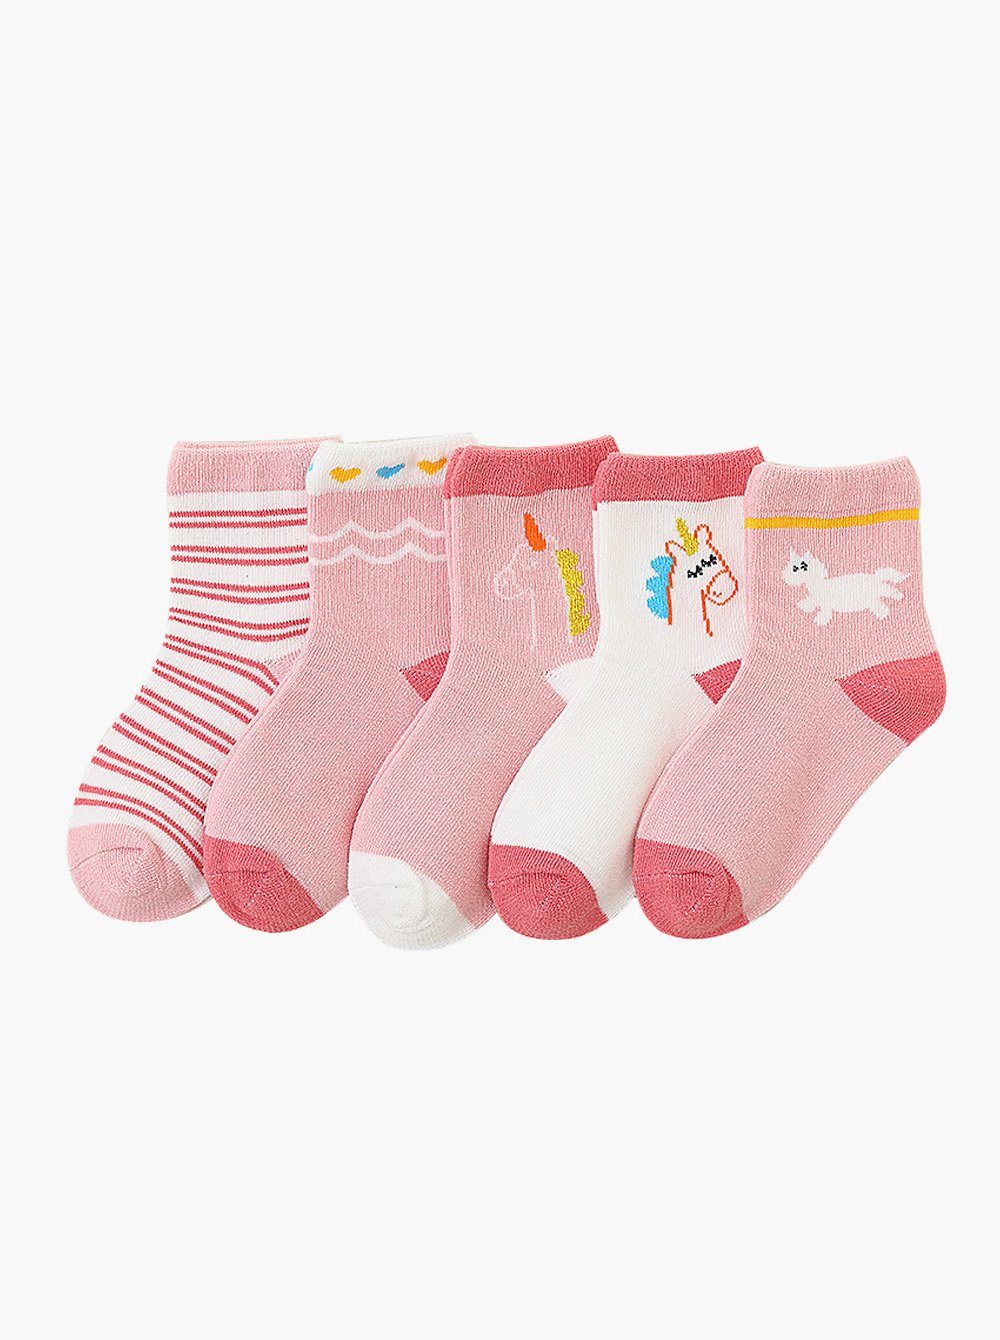 5 axy (5er Langsocken Geschenke Einhorn Kindersocken Bunte Weich Kindersocken axy Pack) Mädchen Paar Socken Multipack Kinder